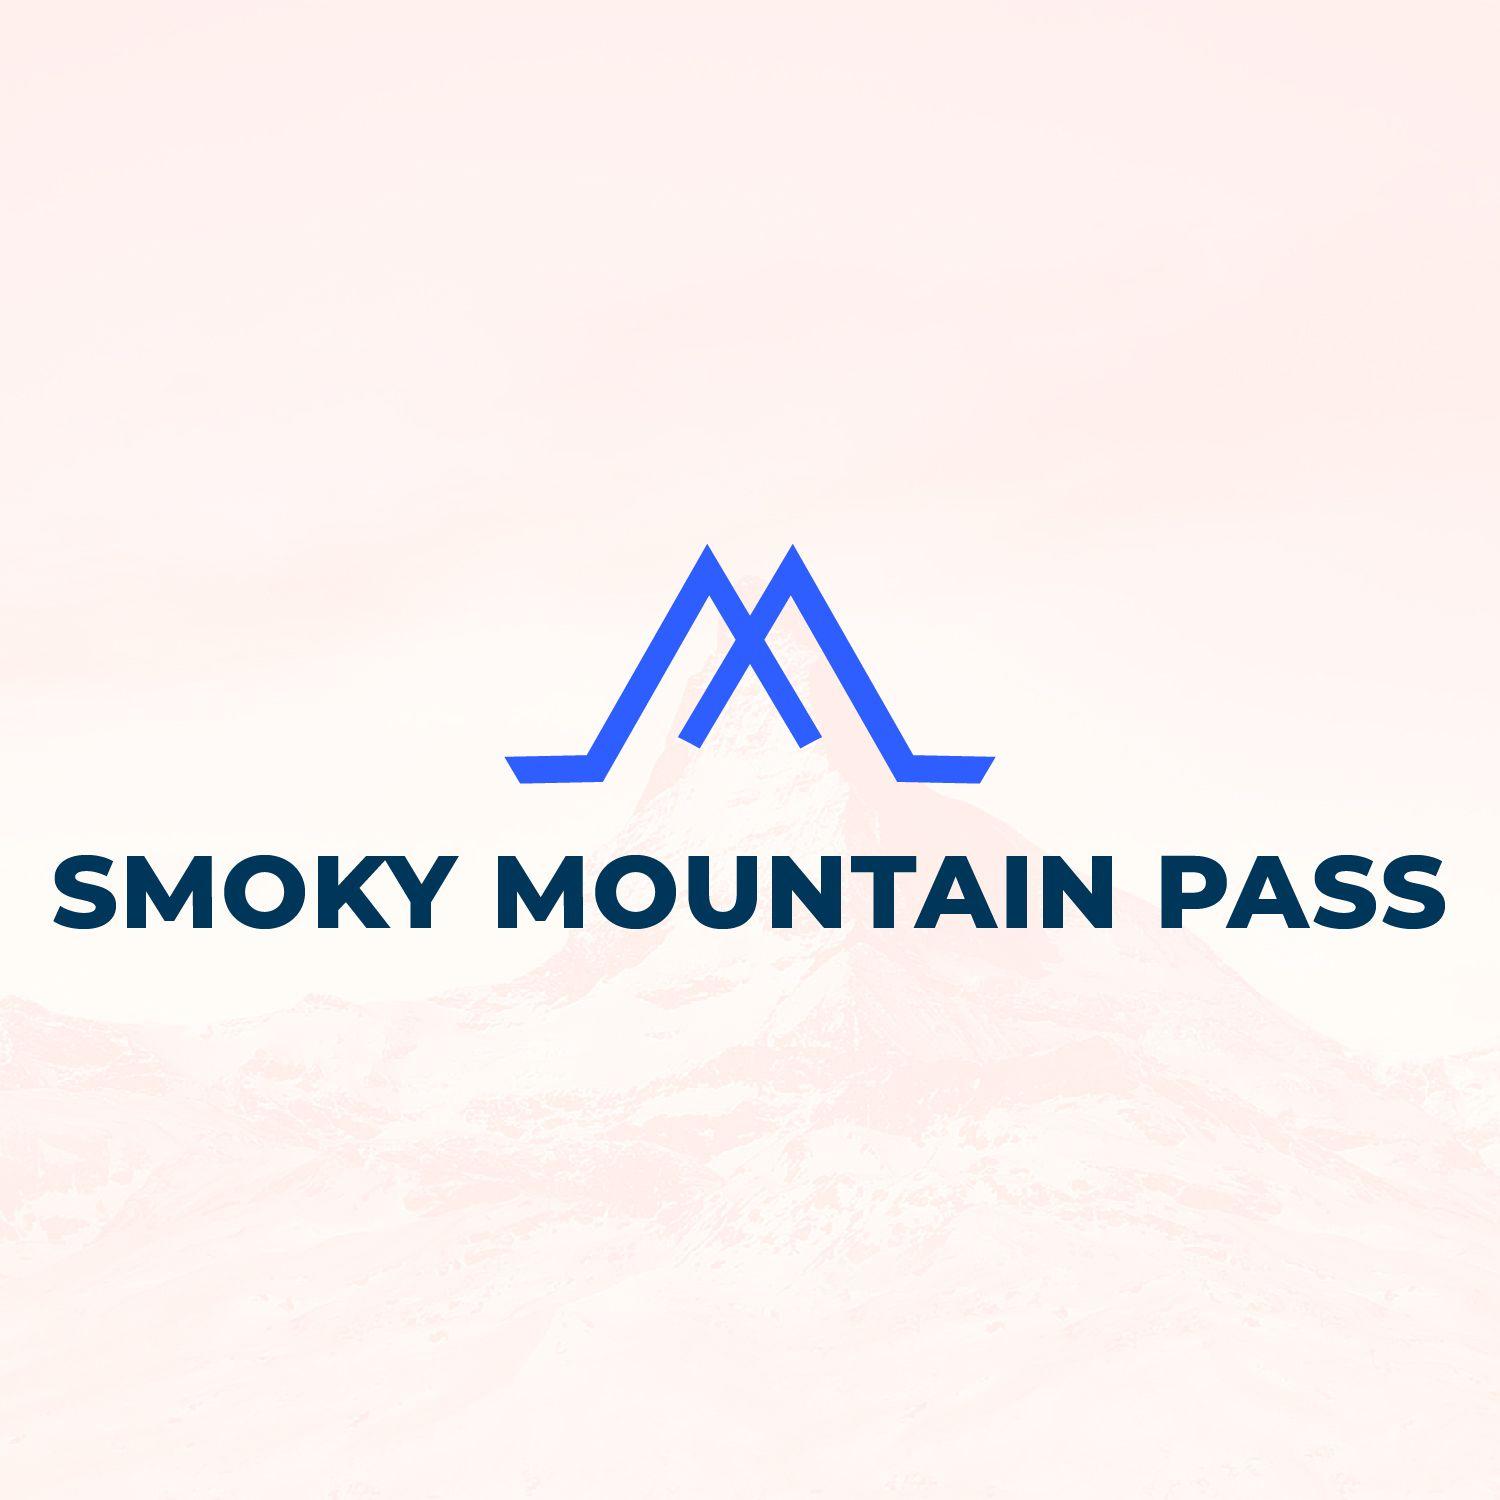 Mountain Entertainment Logo - Elegant, Playful, Entertainment Logo Design for Smoky Mountain Pass ...